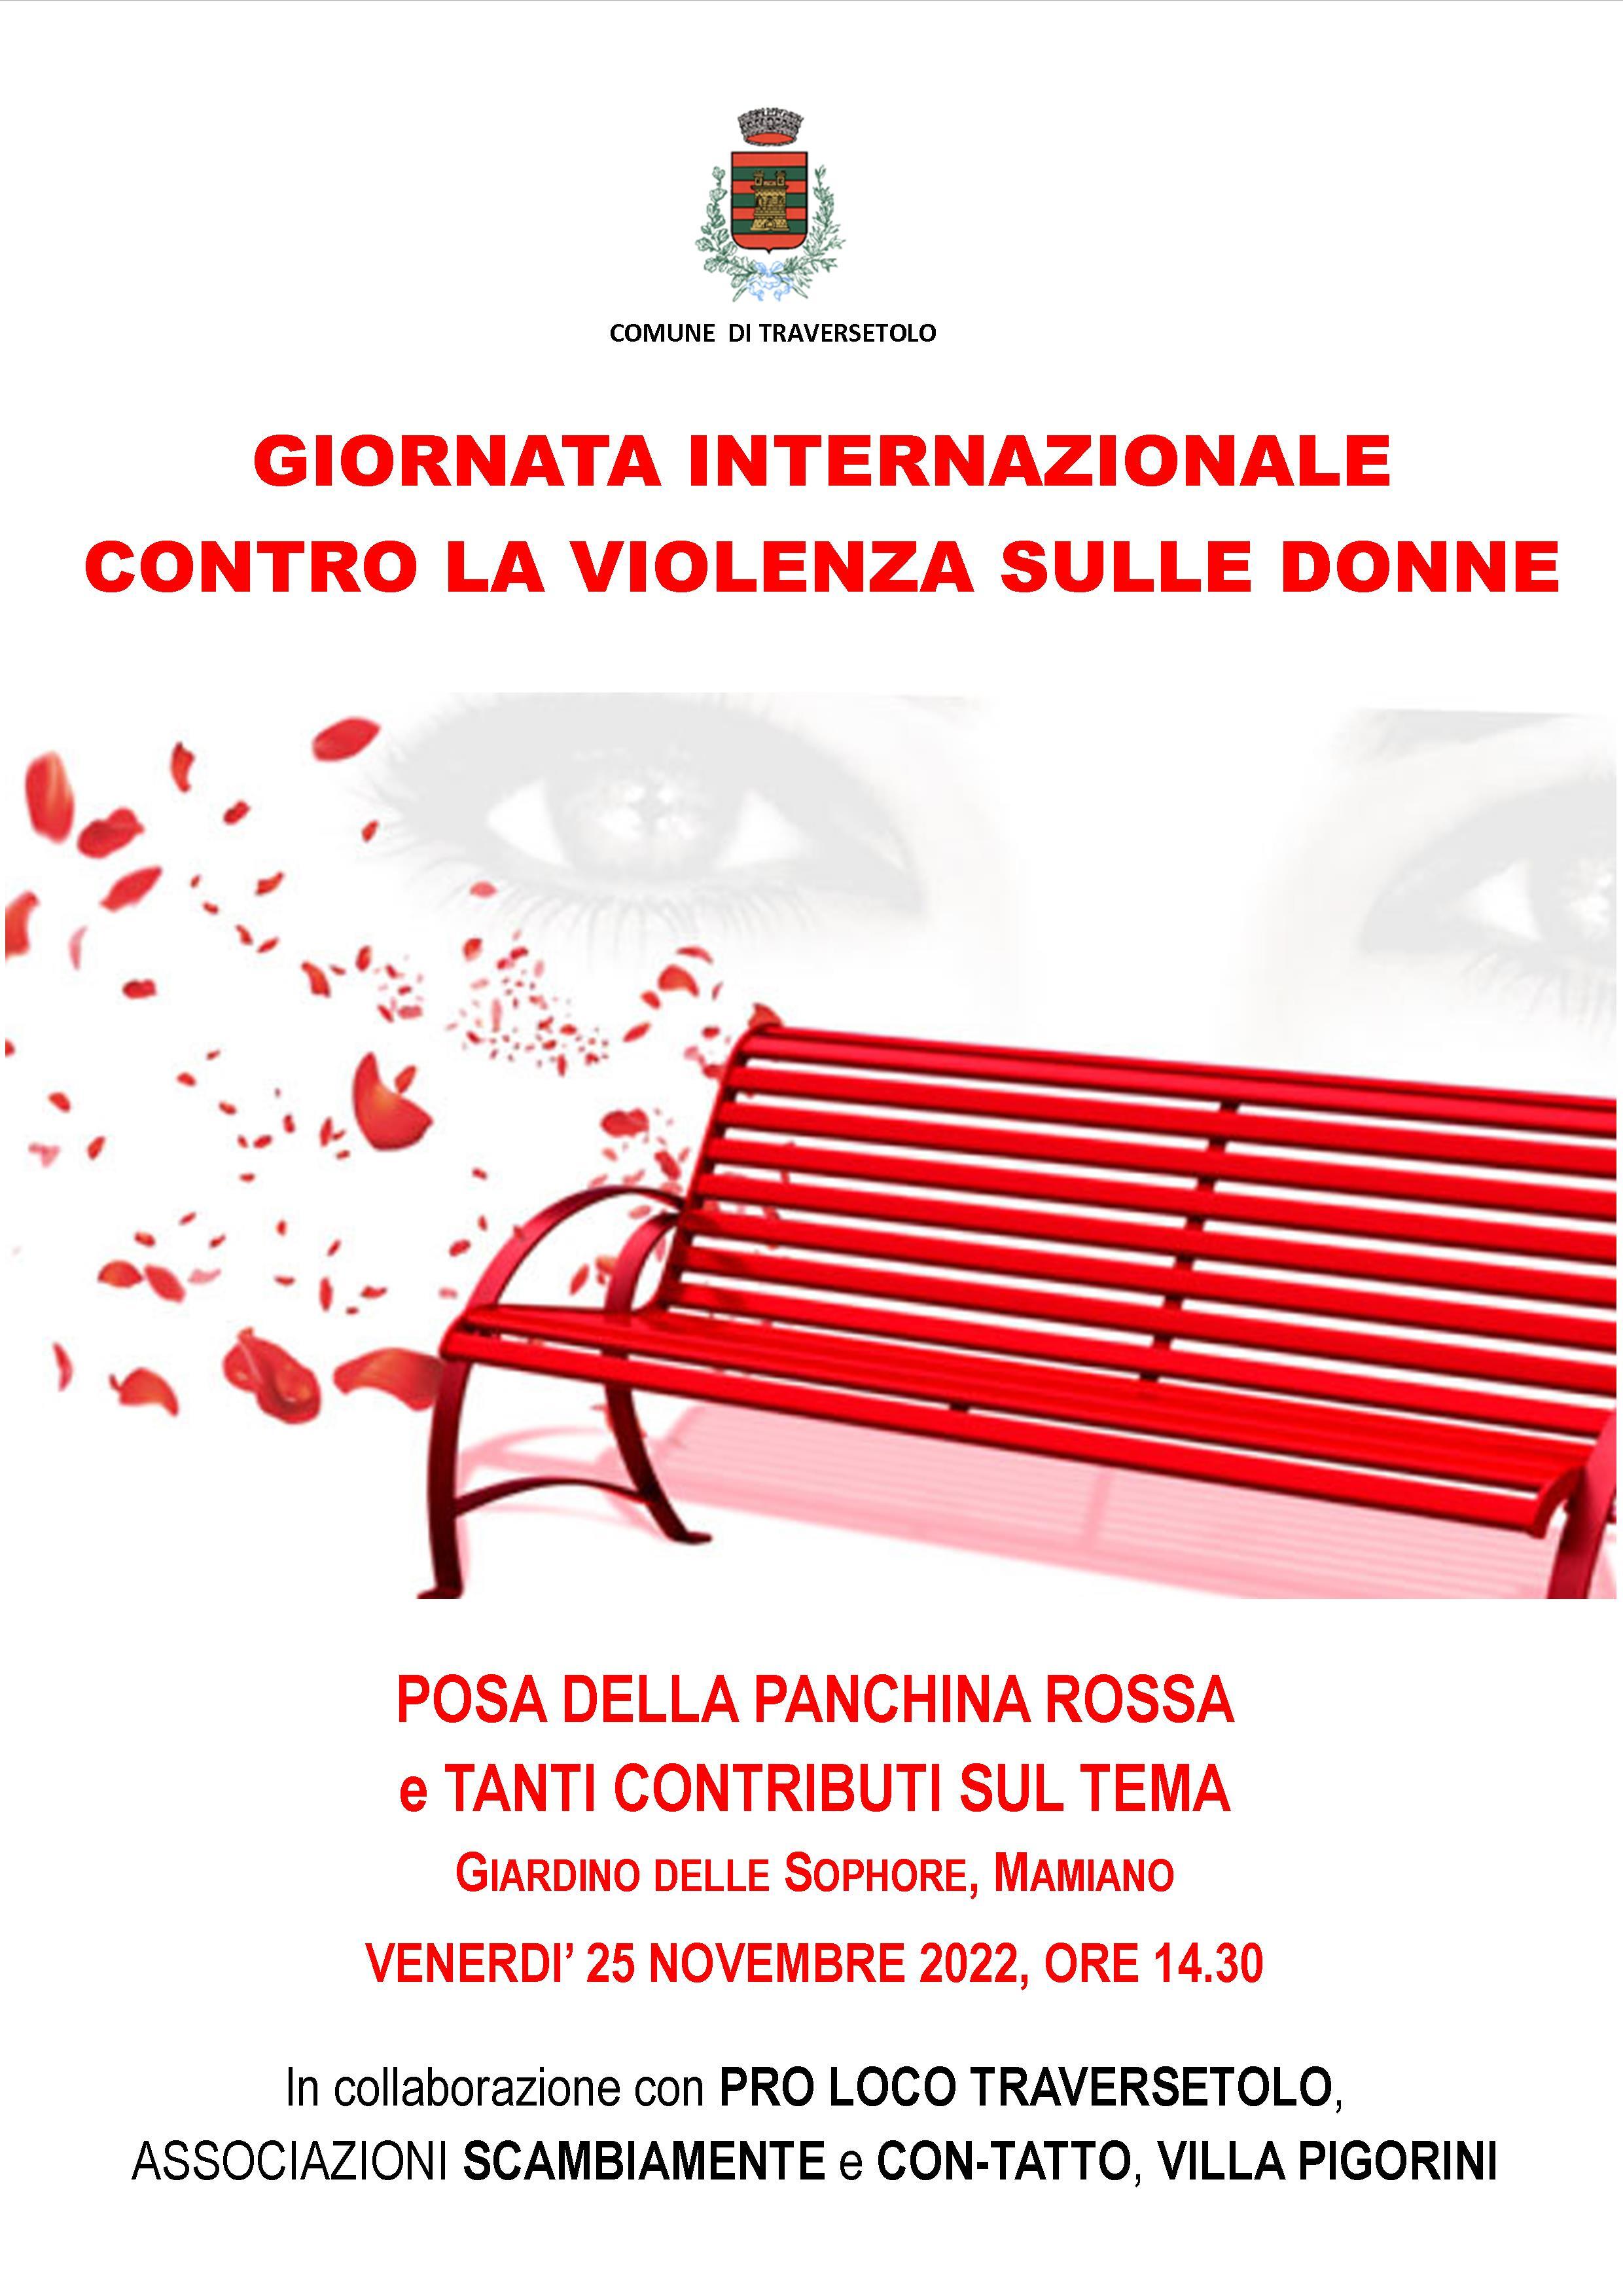 Traversetolo per la Giornata internazionale contro la violenza sulle donne 2022